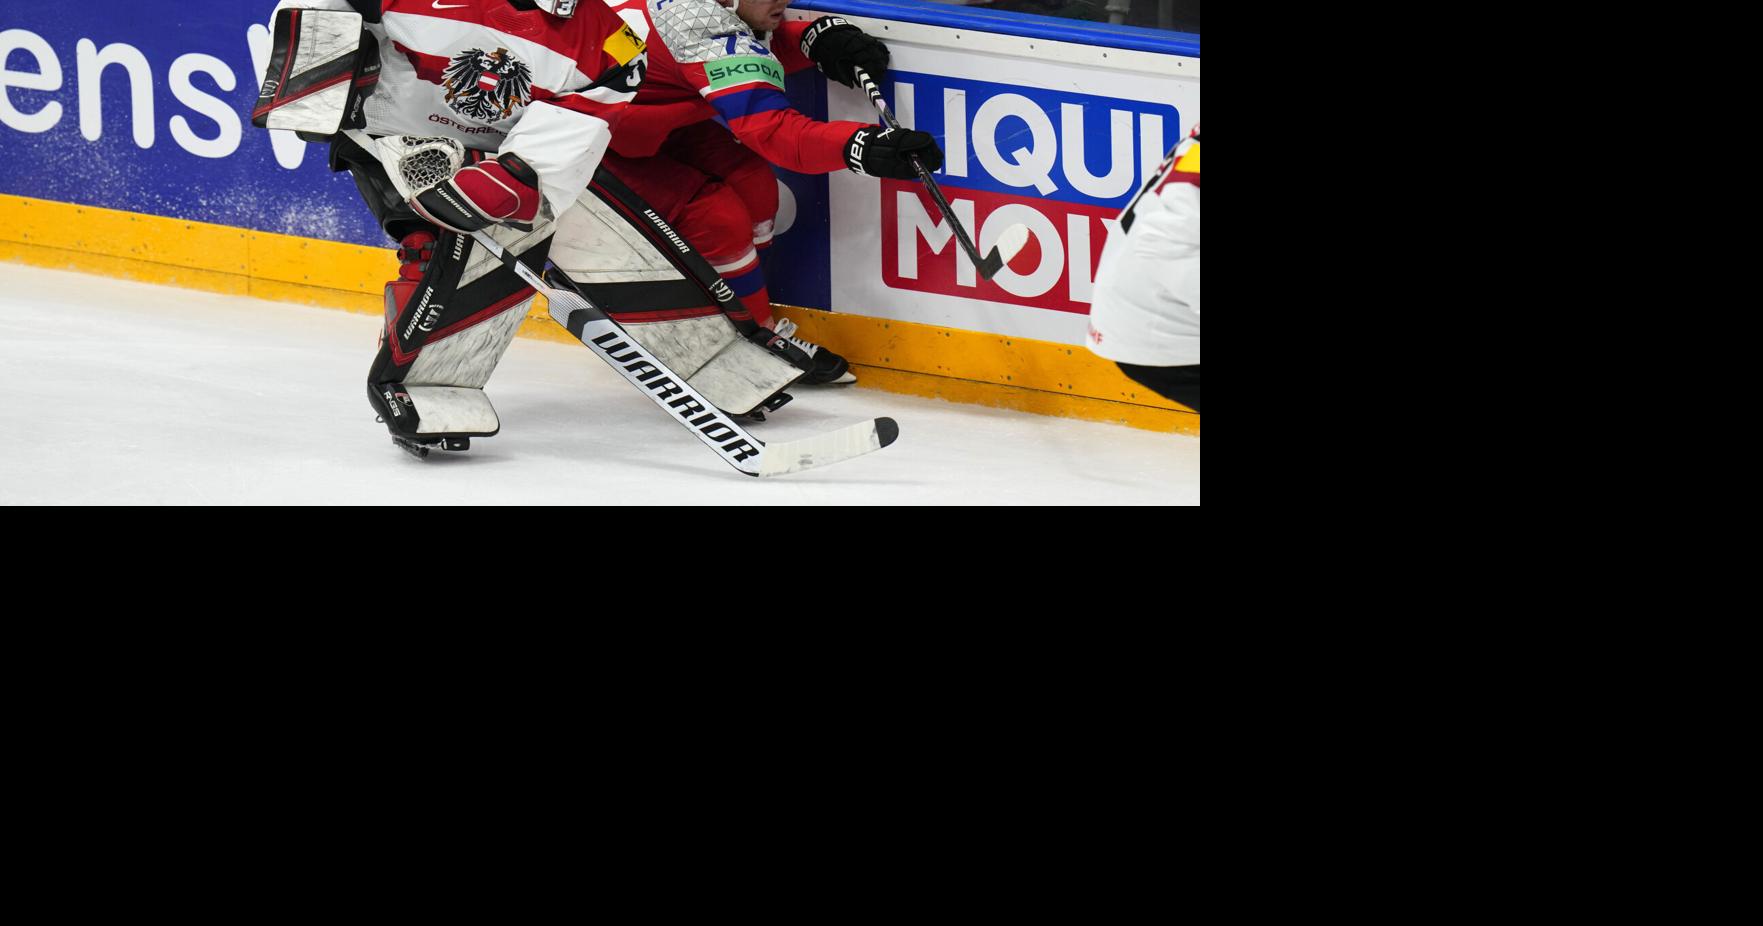 Česká republika Světy ledního hokeje |  Národní sport